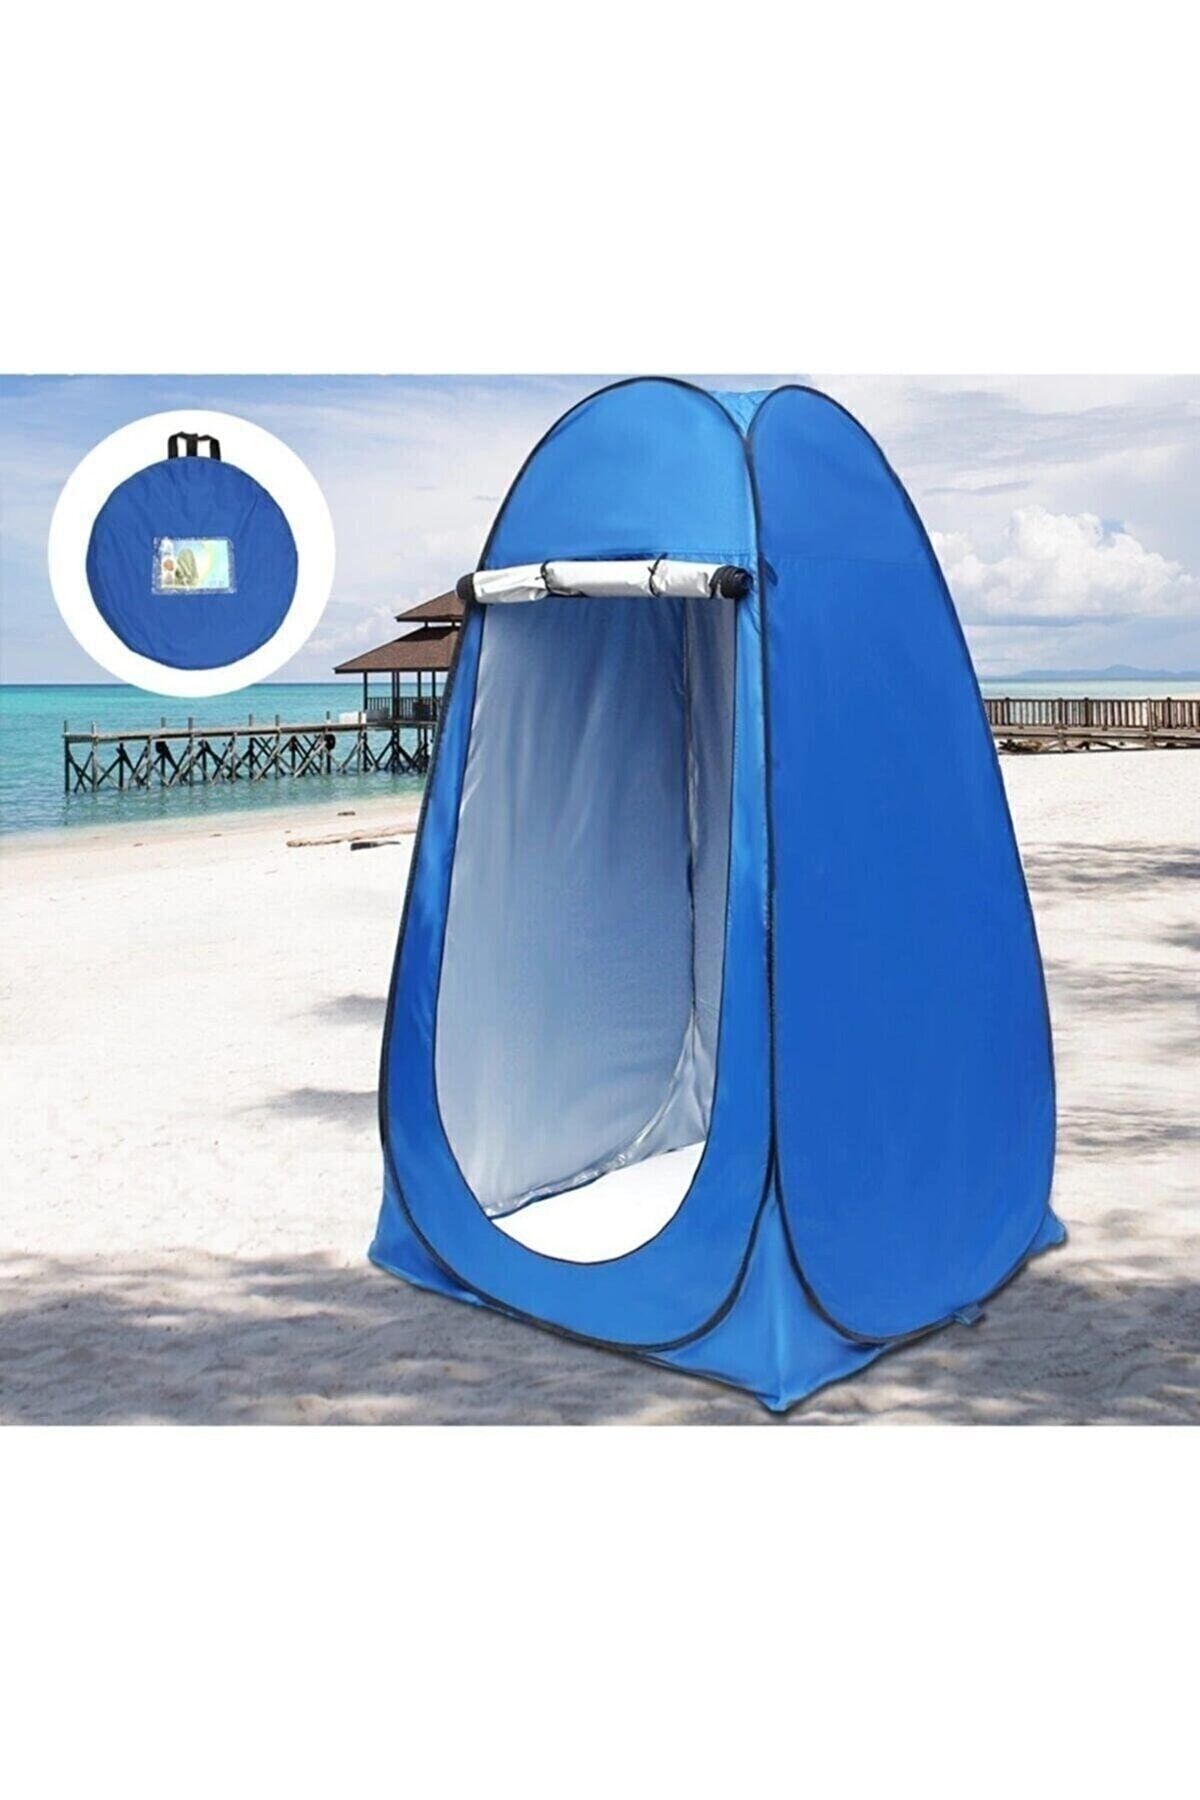 Grc Accessory Otomatik Giyinme Çadırı Prova Kabin Duş Wc Tuvalet Çok Amaçlı Kullanım Plaj Kamp Çadır 190*120*120cm